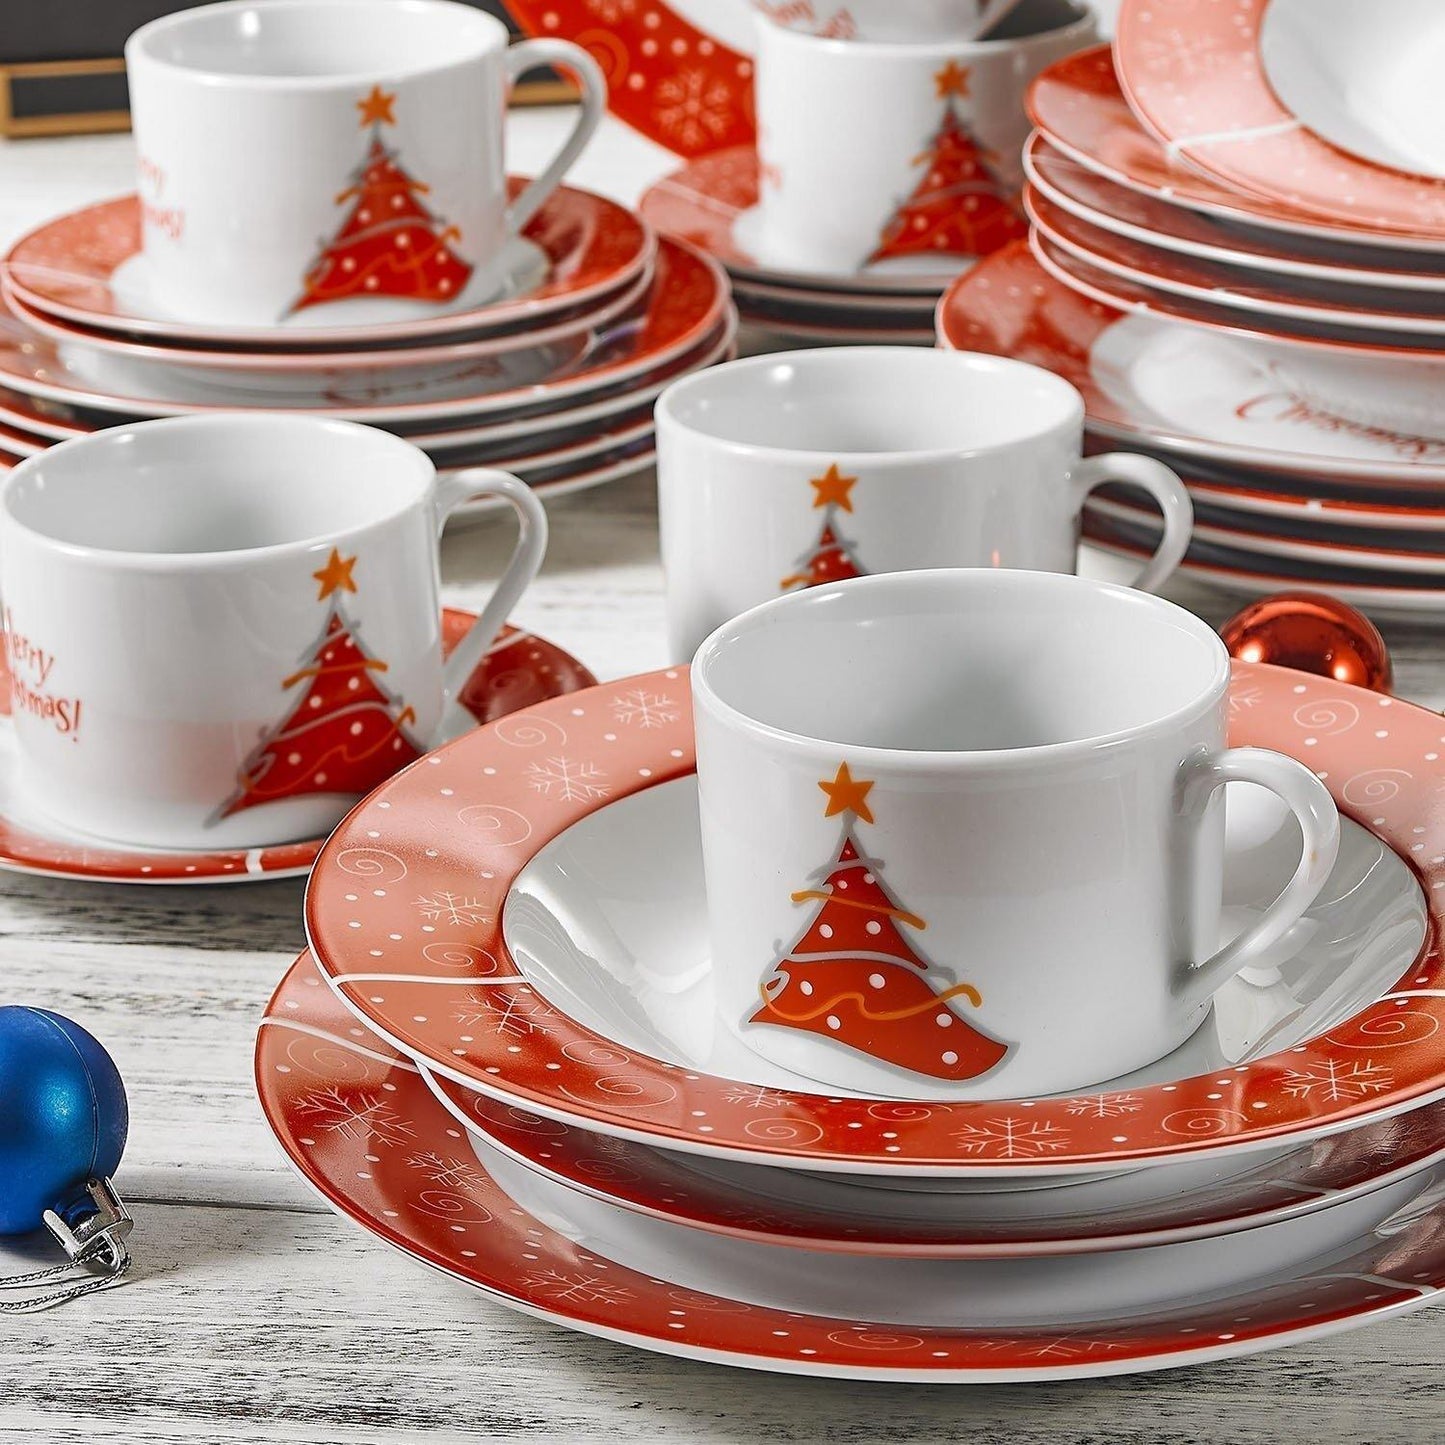 30-Piece Christmas Pattern Porcelain Dinnerware Set - Nordic Side - 30, Christmas, CupSaucerDessert, Dinnerware, Pattern, Piece, Plate, PlateDinner, PlateSoup, Porcelain, Set, Tableware, VEWE